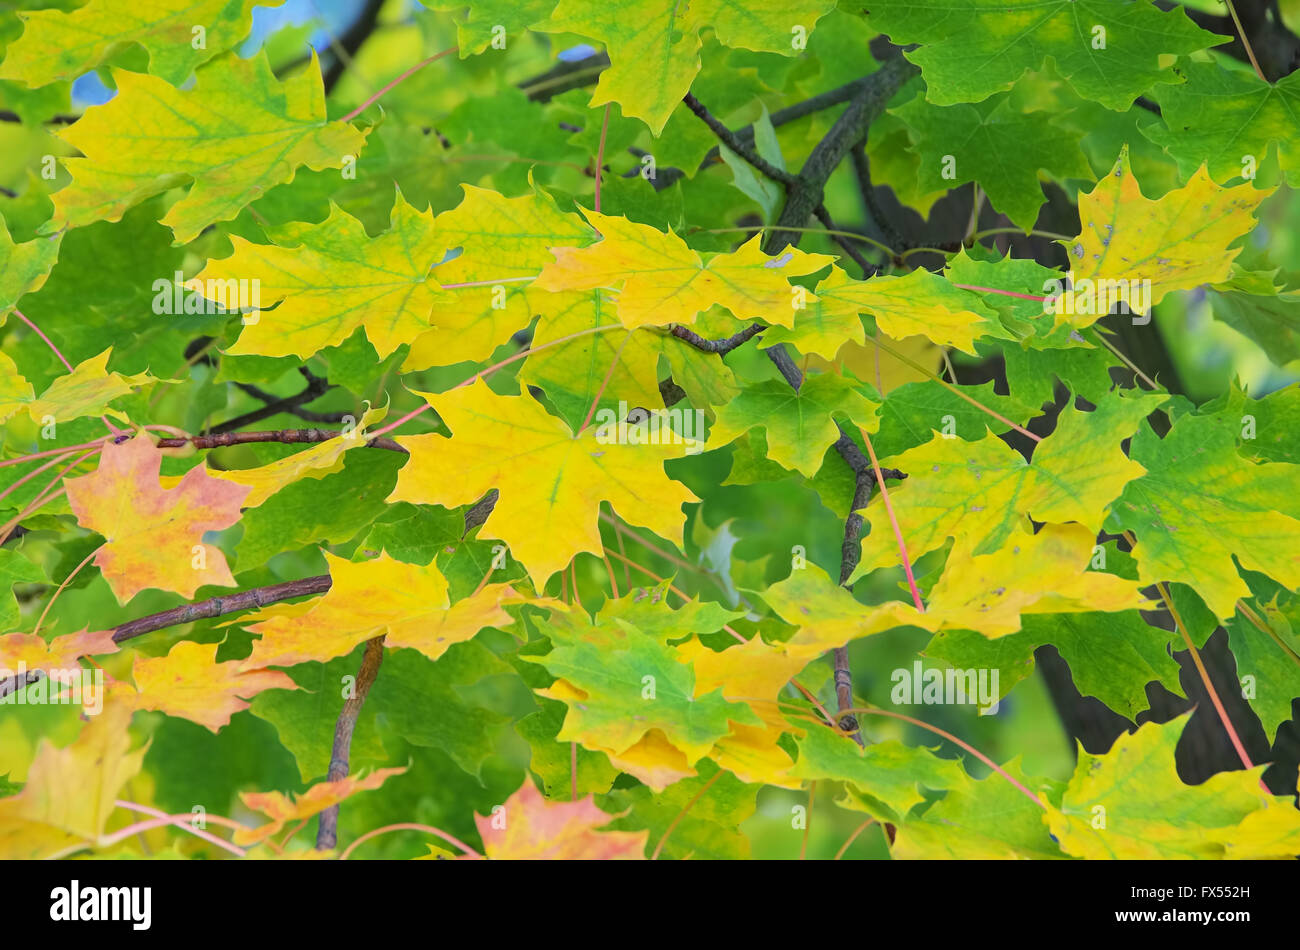 Ahornblatt - maple leaf 15 Stock Photo